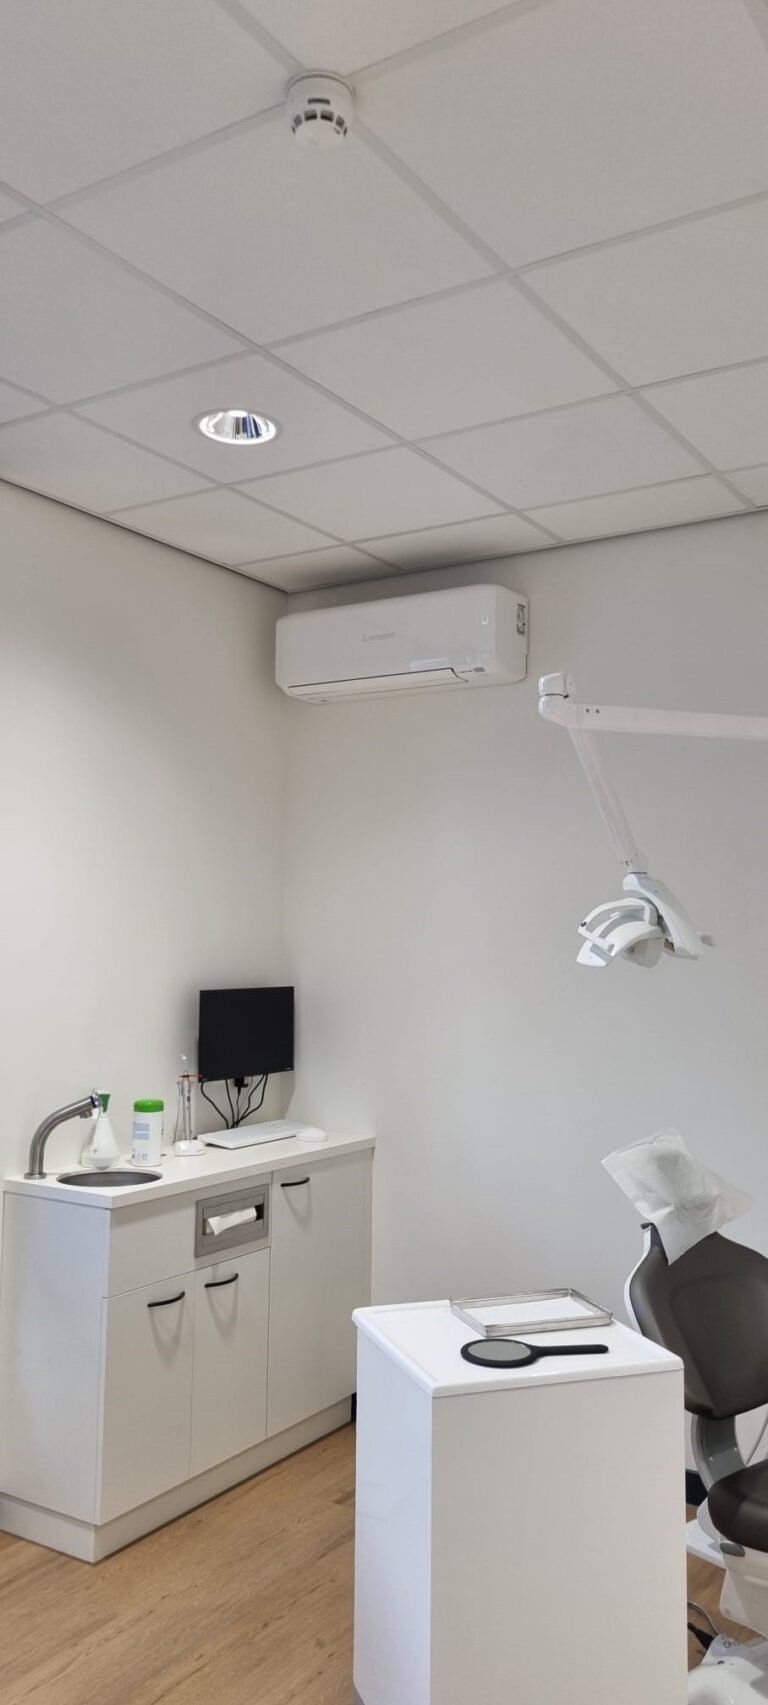 tandarts warmtepomp installatie